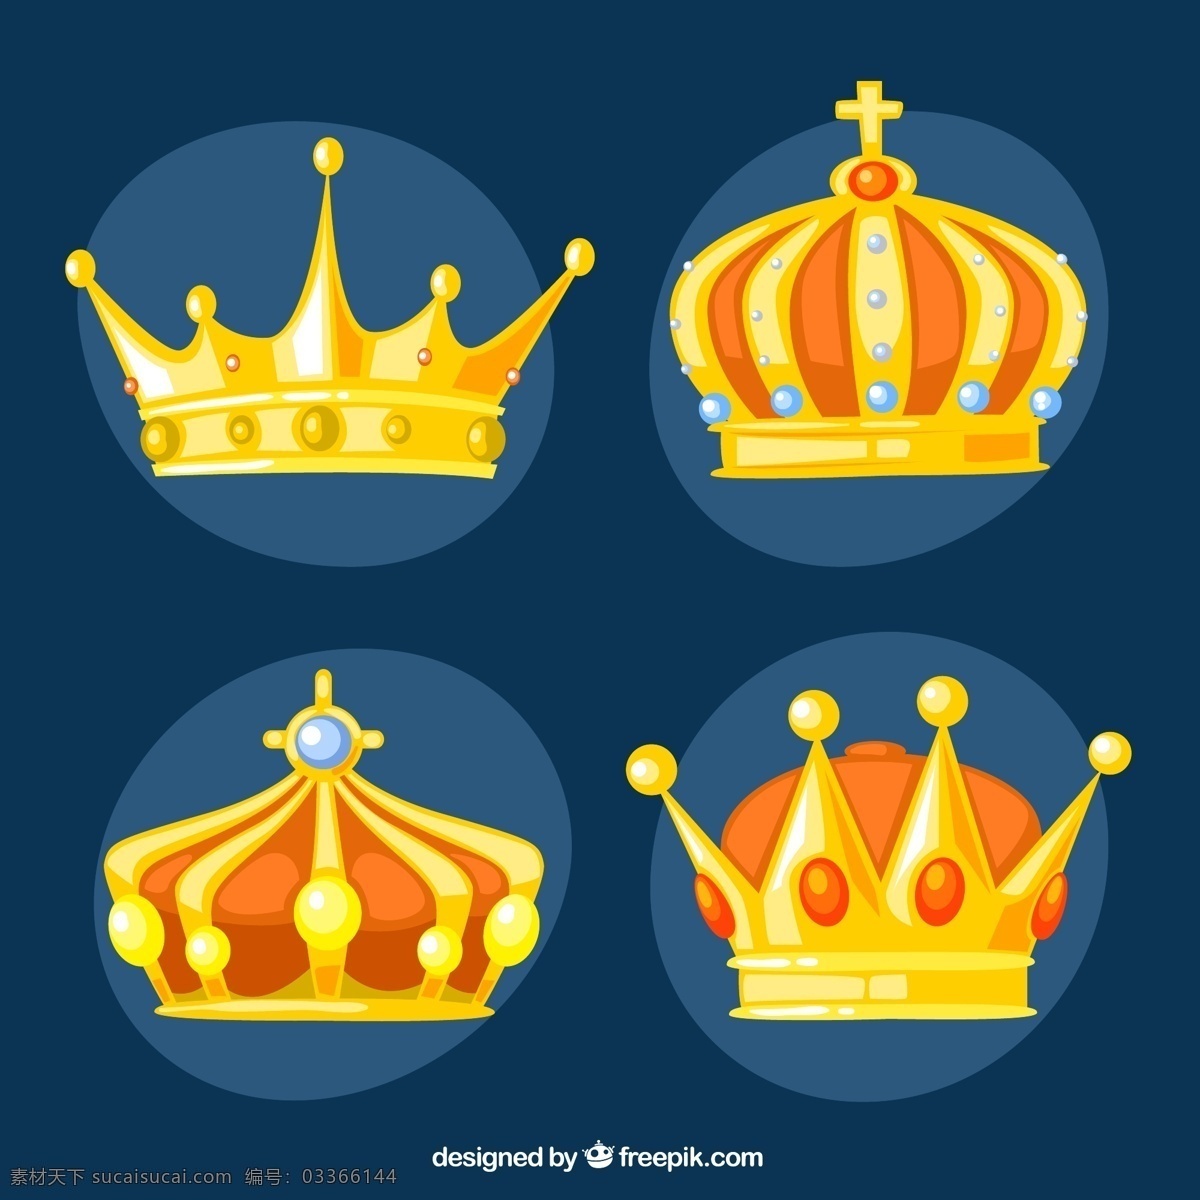 精美王冠 王冠 皇冠 金色 金子 国王 王室 珍珠 贵族 黄色